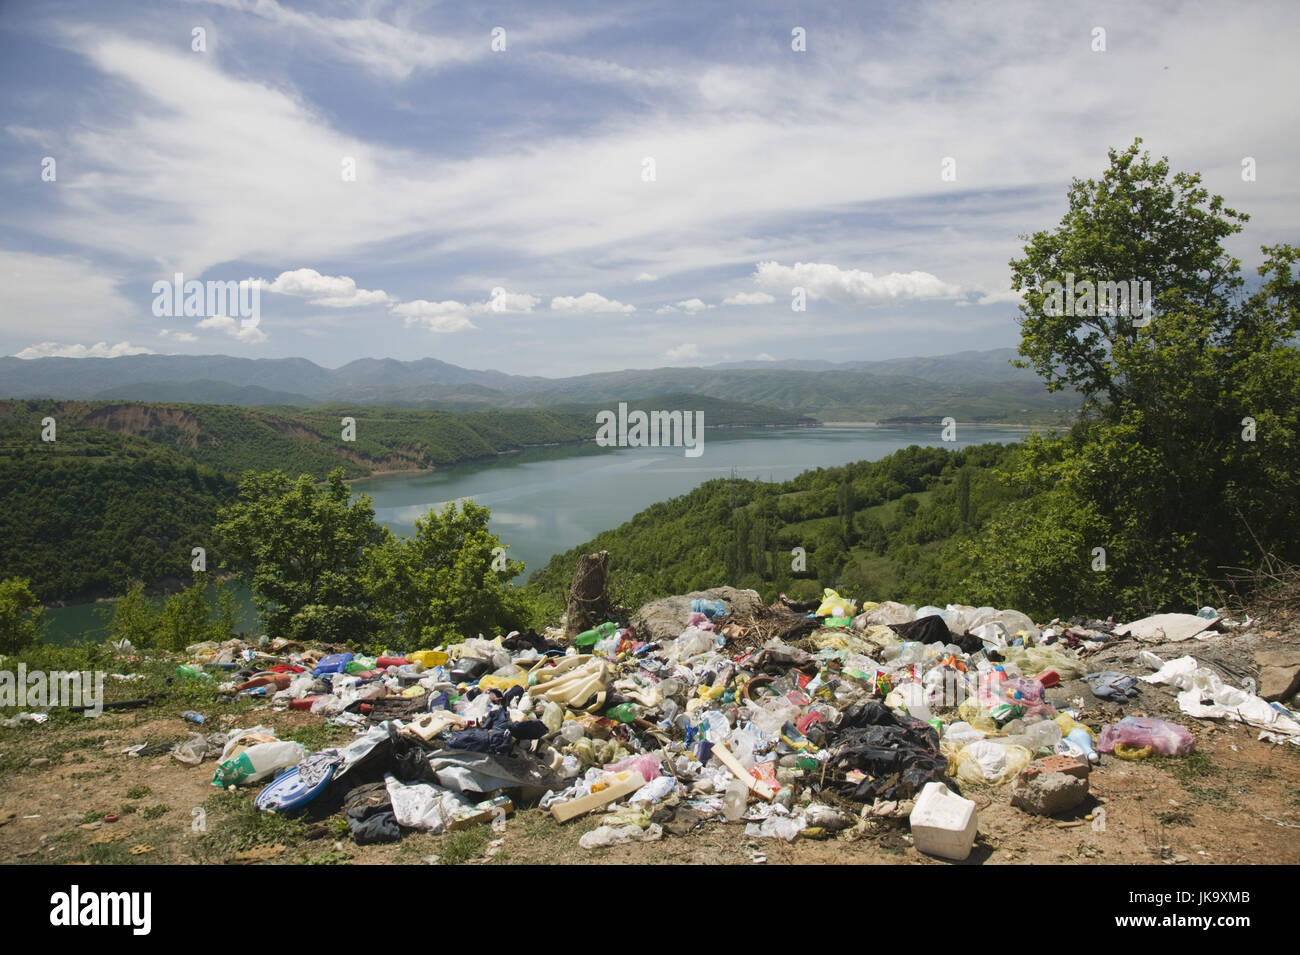 Mazedonien, Debar-See, Stausee, Landschaft, Natur, Abfall, Stock Photo